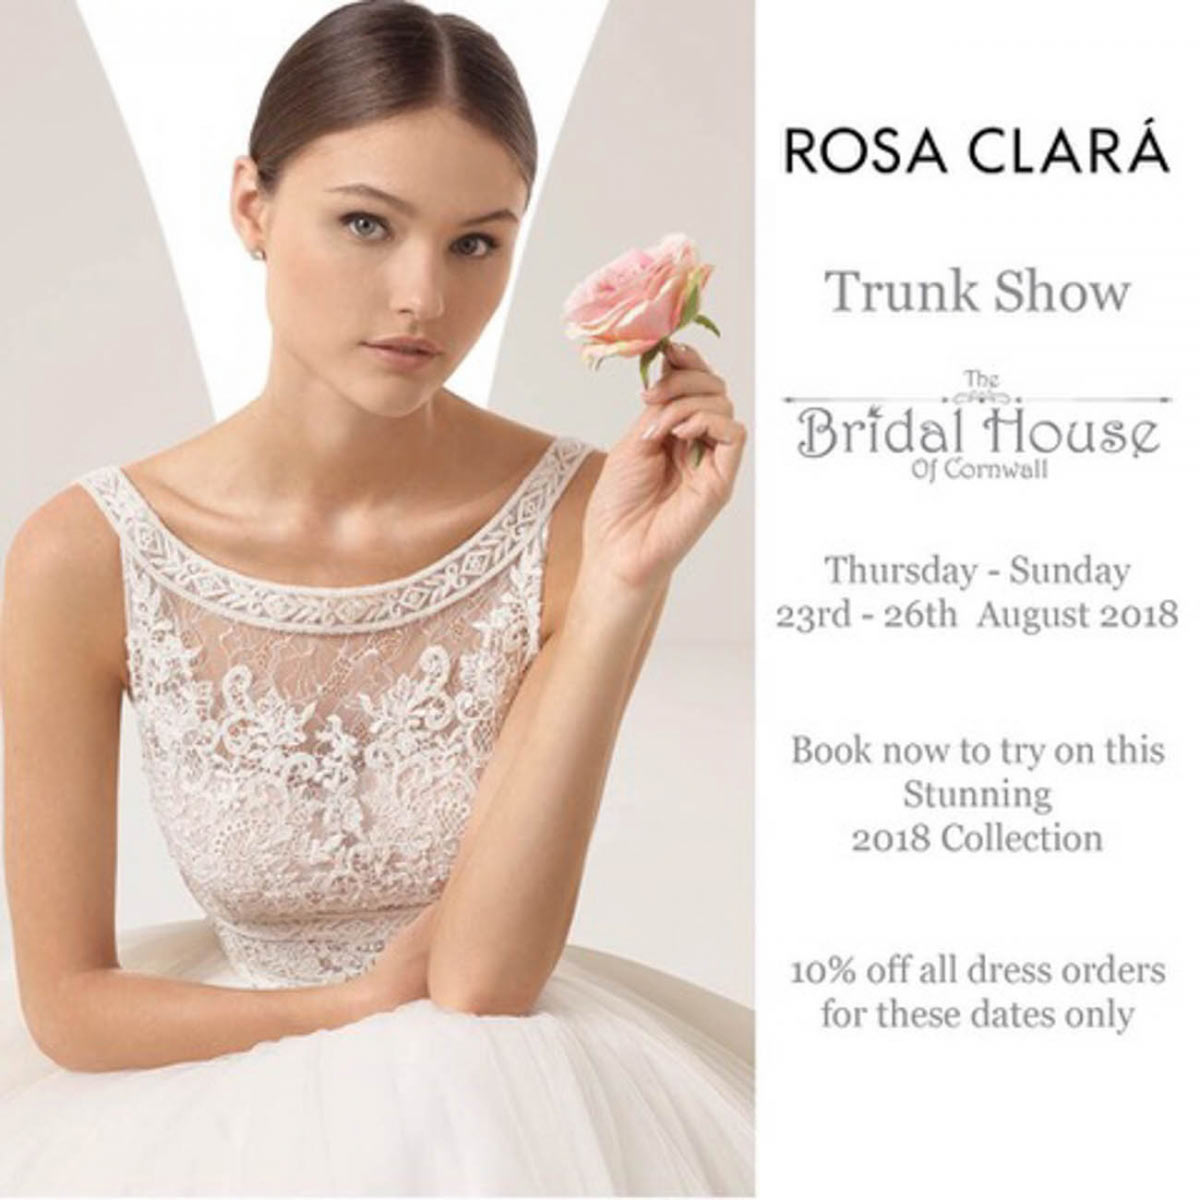 Rosa Clara Trunk Show at The Bridal House of Cornwall 